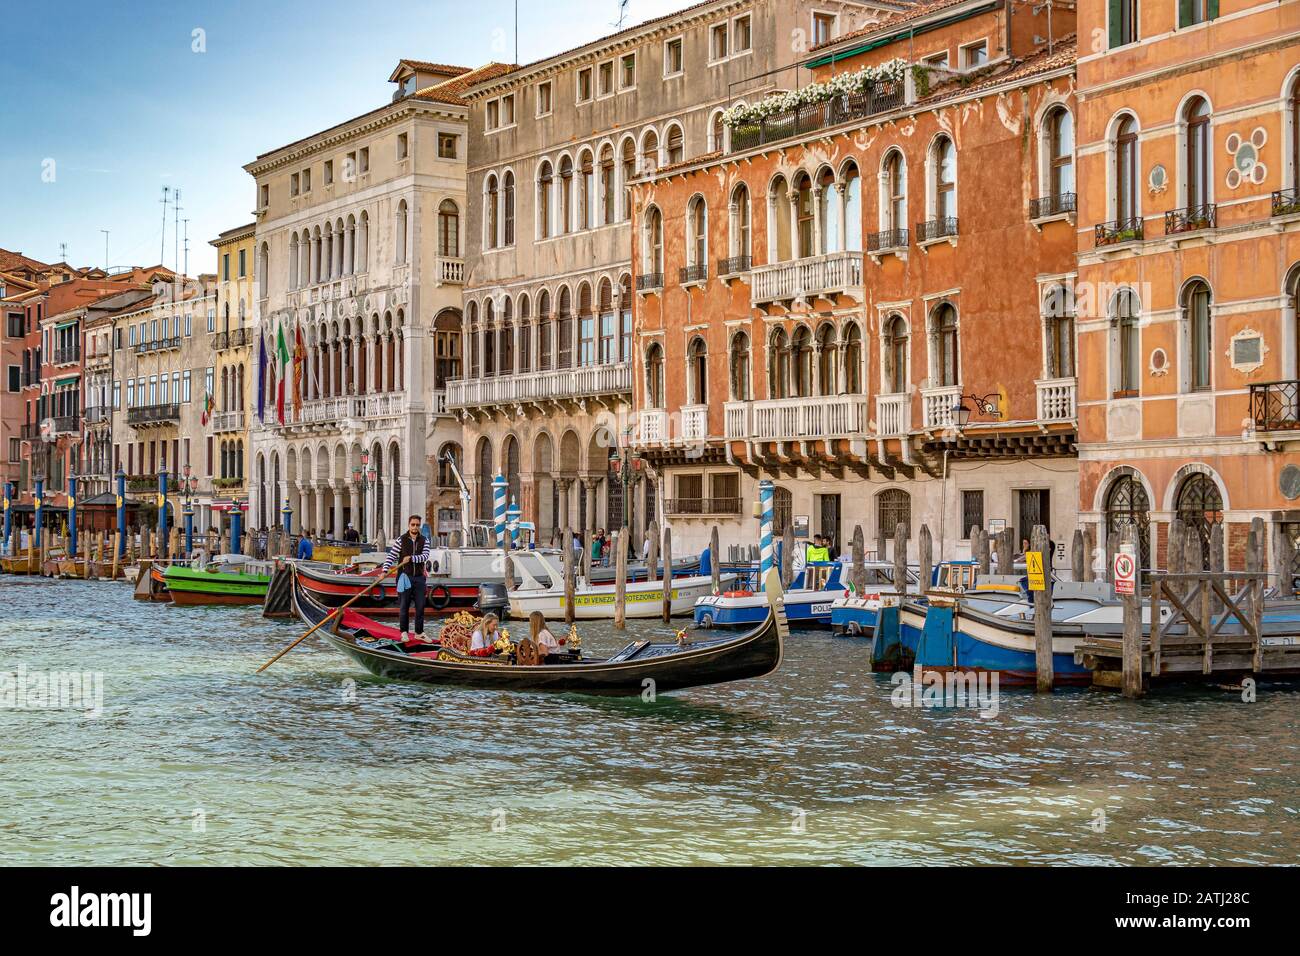 Ein Gondolier lenkt seine Gondel mit zwei Mädchen, die eine Gondelfahrt auf dem Canal Grande in Venedig, Italien, machen Stockfoto